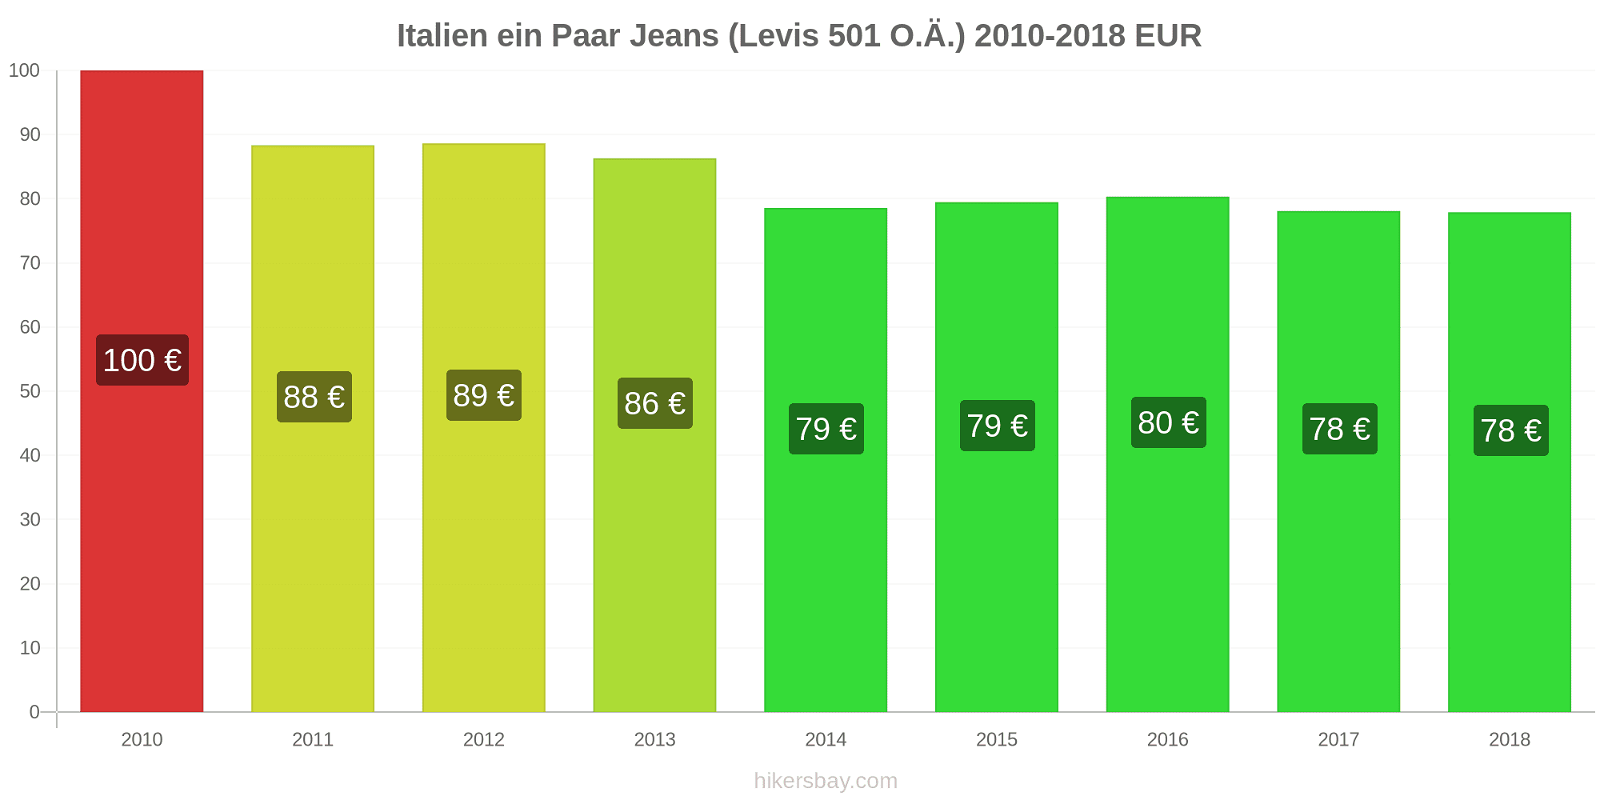 Italien Preisänderungen 1 Paar Jeans (Levis 501 oder ähnlich) hikersbay.com